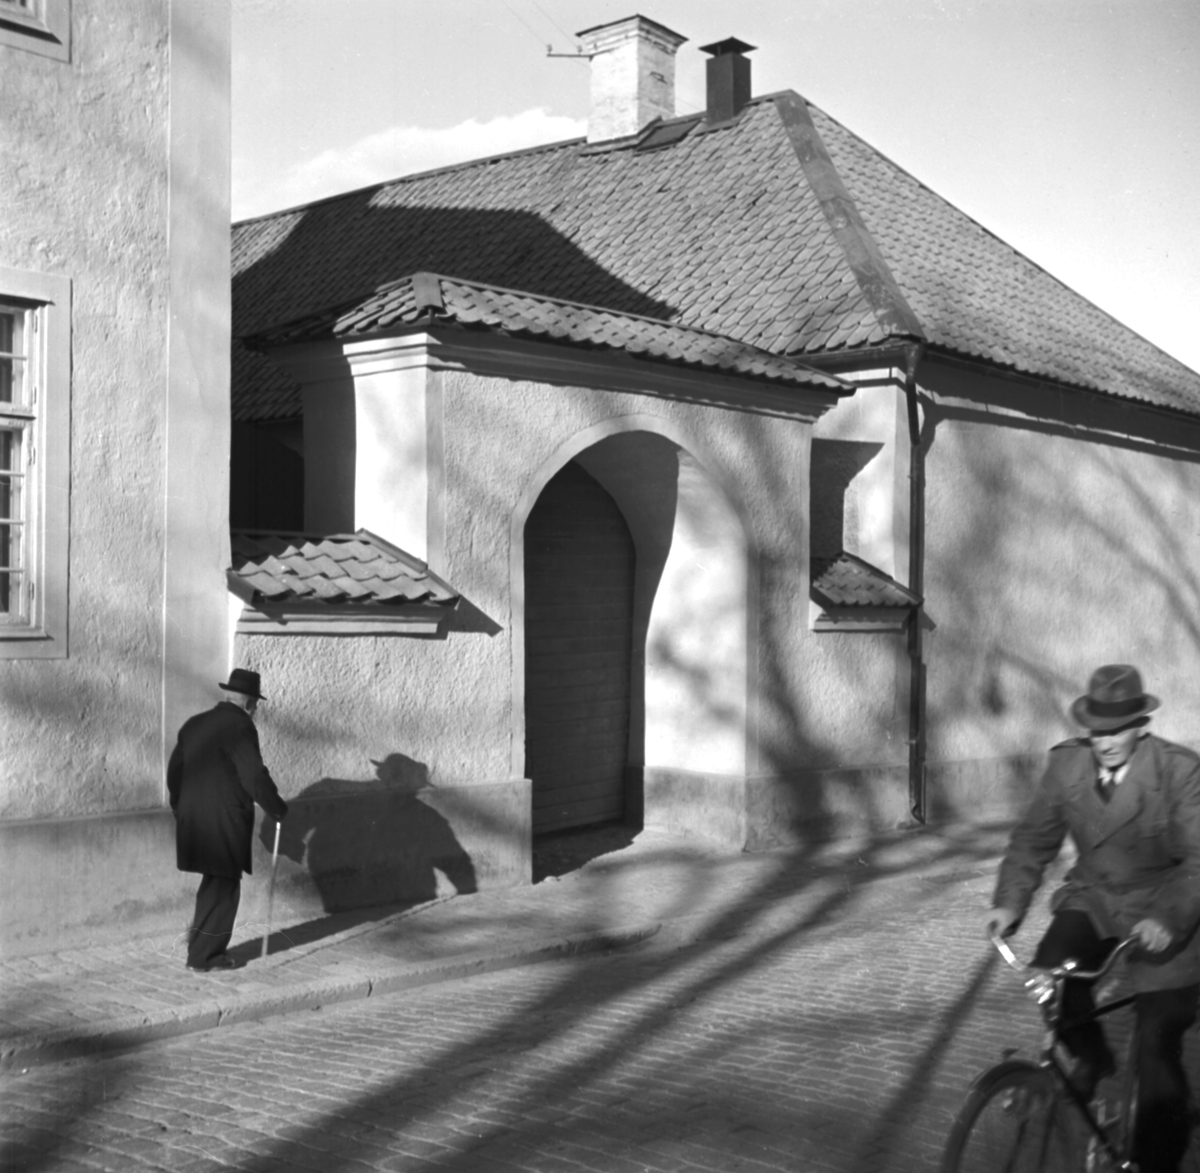 Kvällssolen slog långa skuggor mot Biskopsgårdens fasad när en äldre man snart skulle nå gårdens gatuport. Bilden publicerades i Fotografisk årsbok och hade där titeln "Snart vid porten". Sannolikt finner vi i detta fotografens symboliska tanke. Foto omkring 1950.